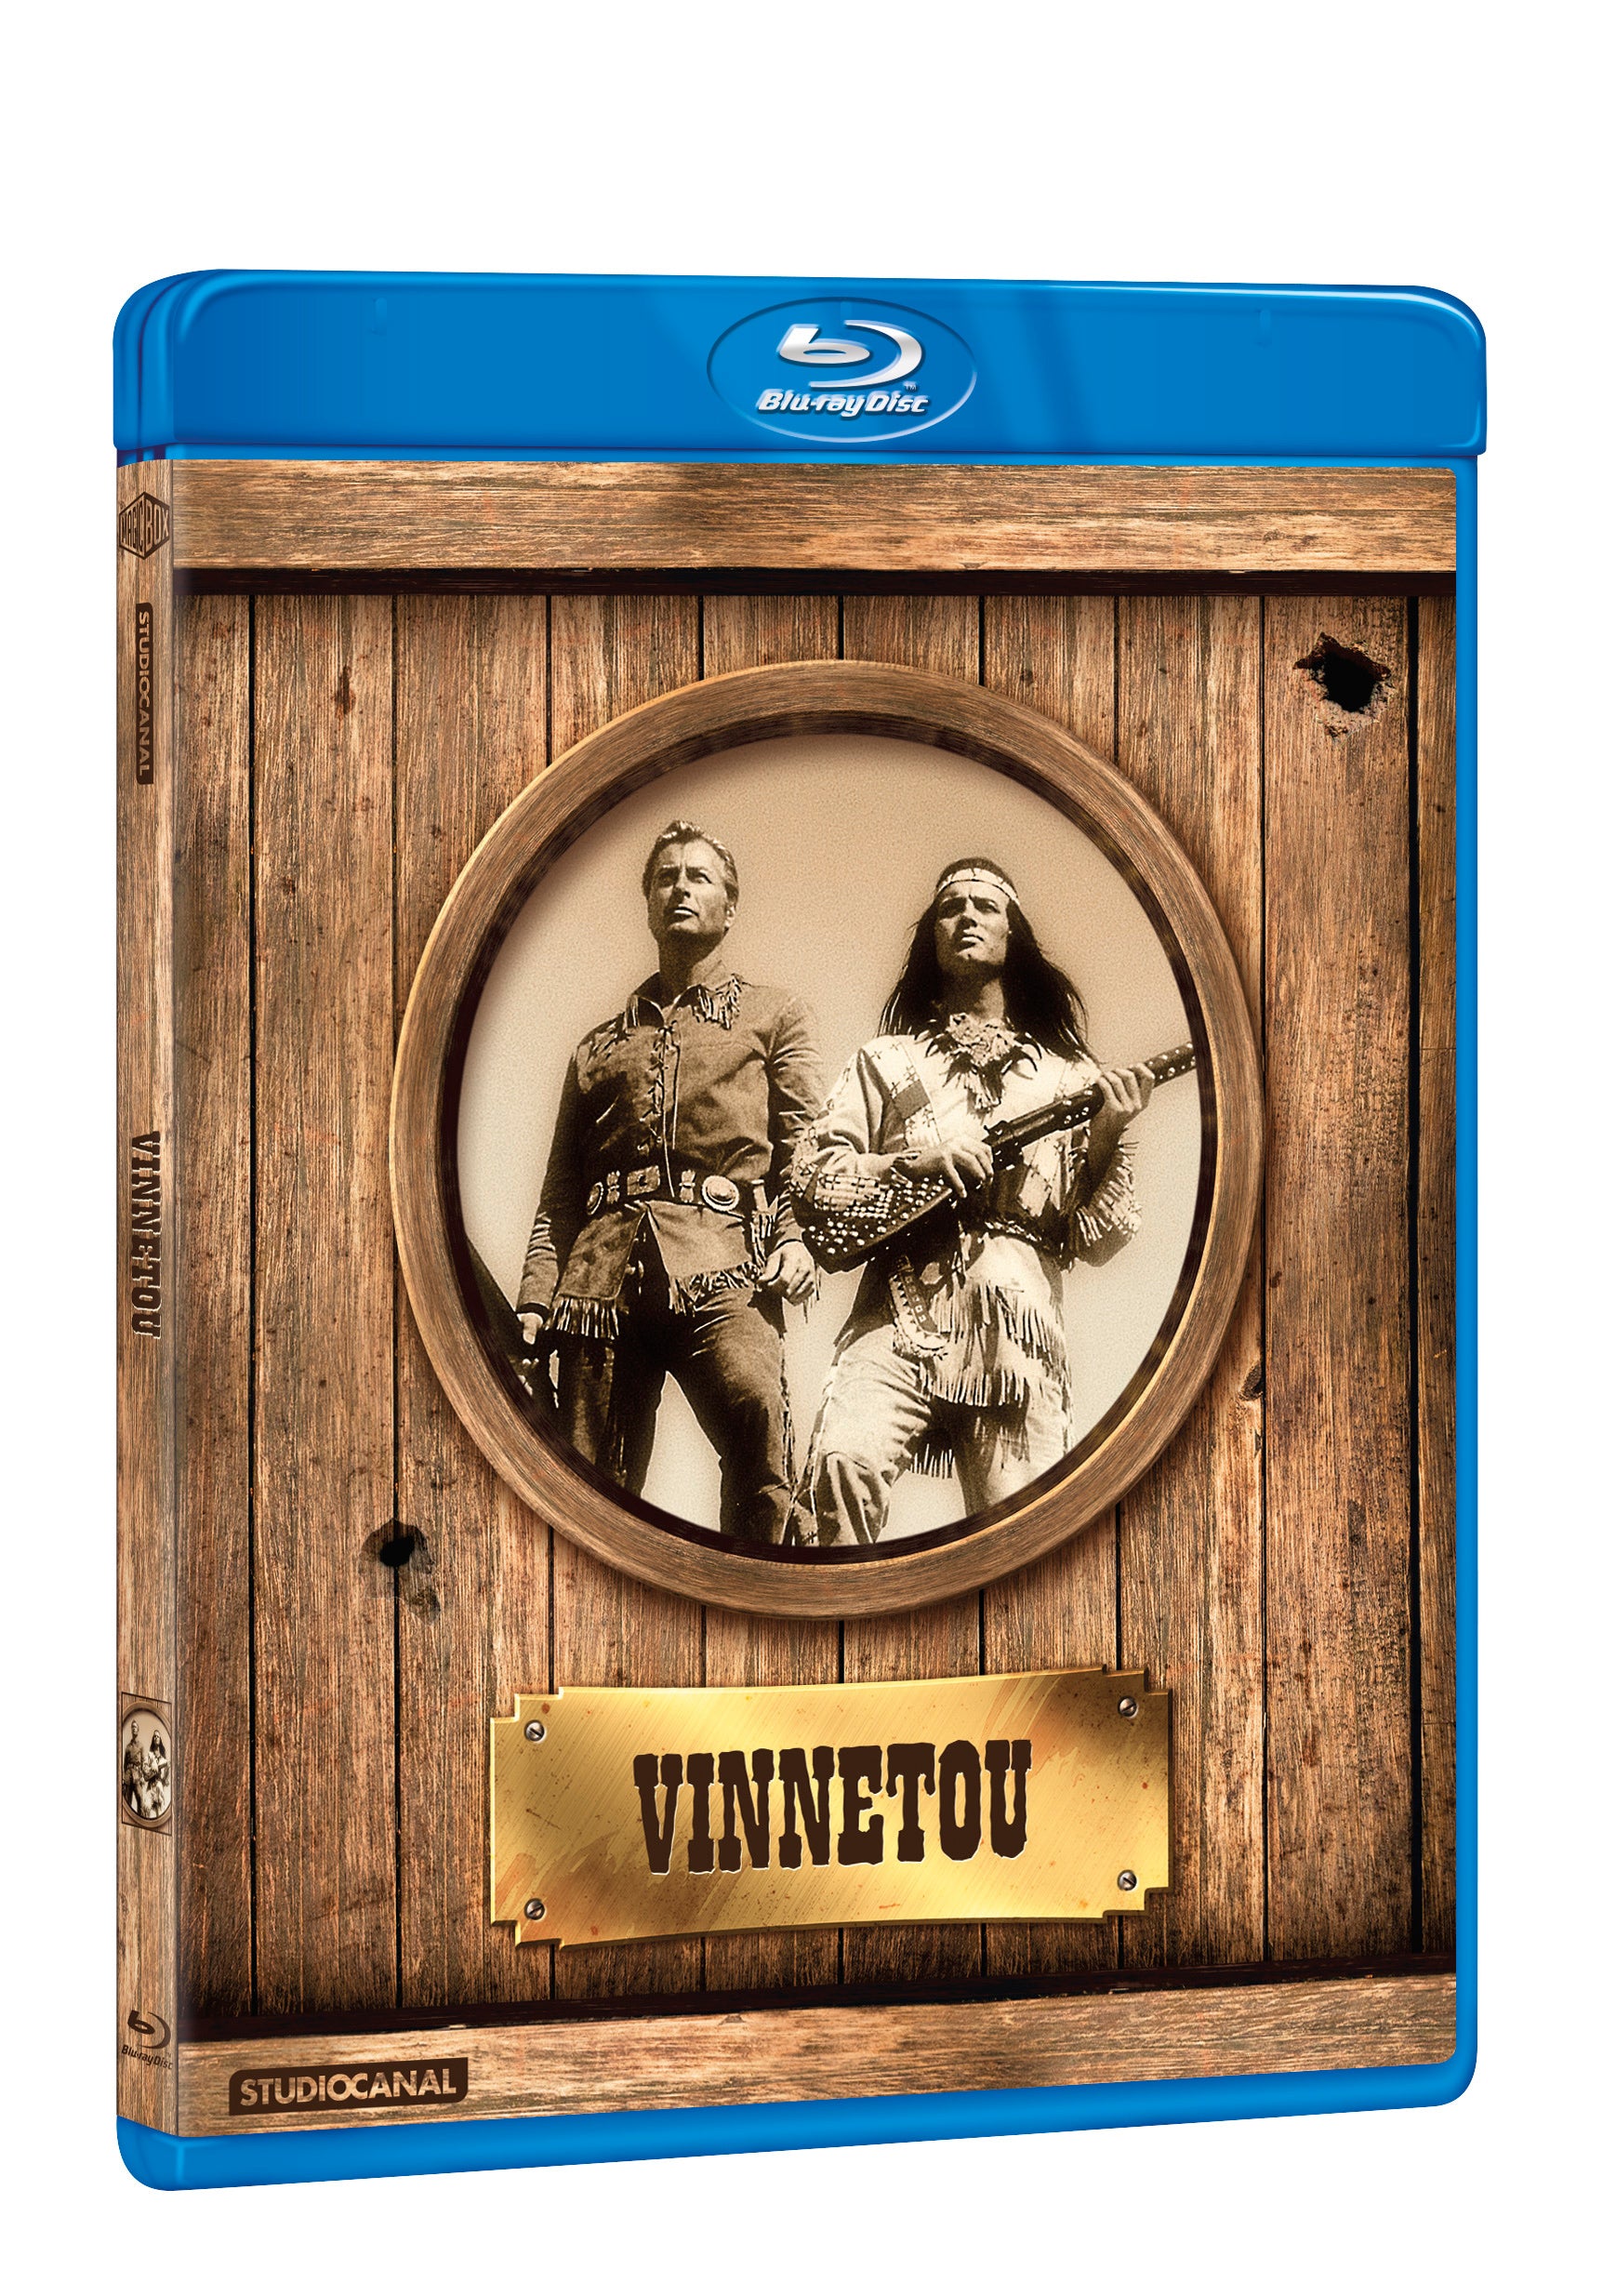 Vinnetou BD / Winnetou - Czech version